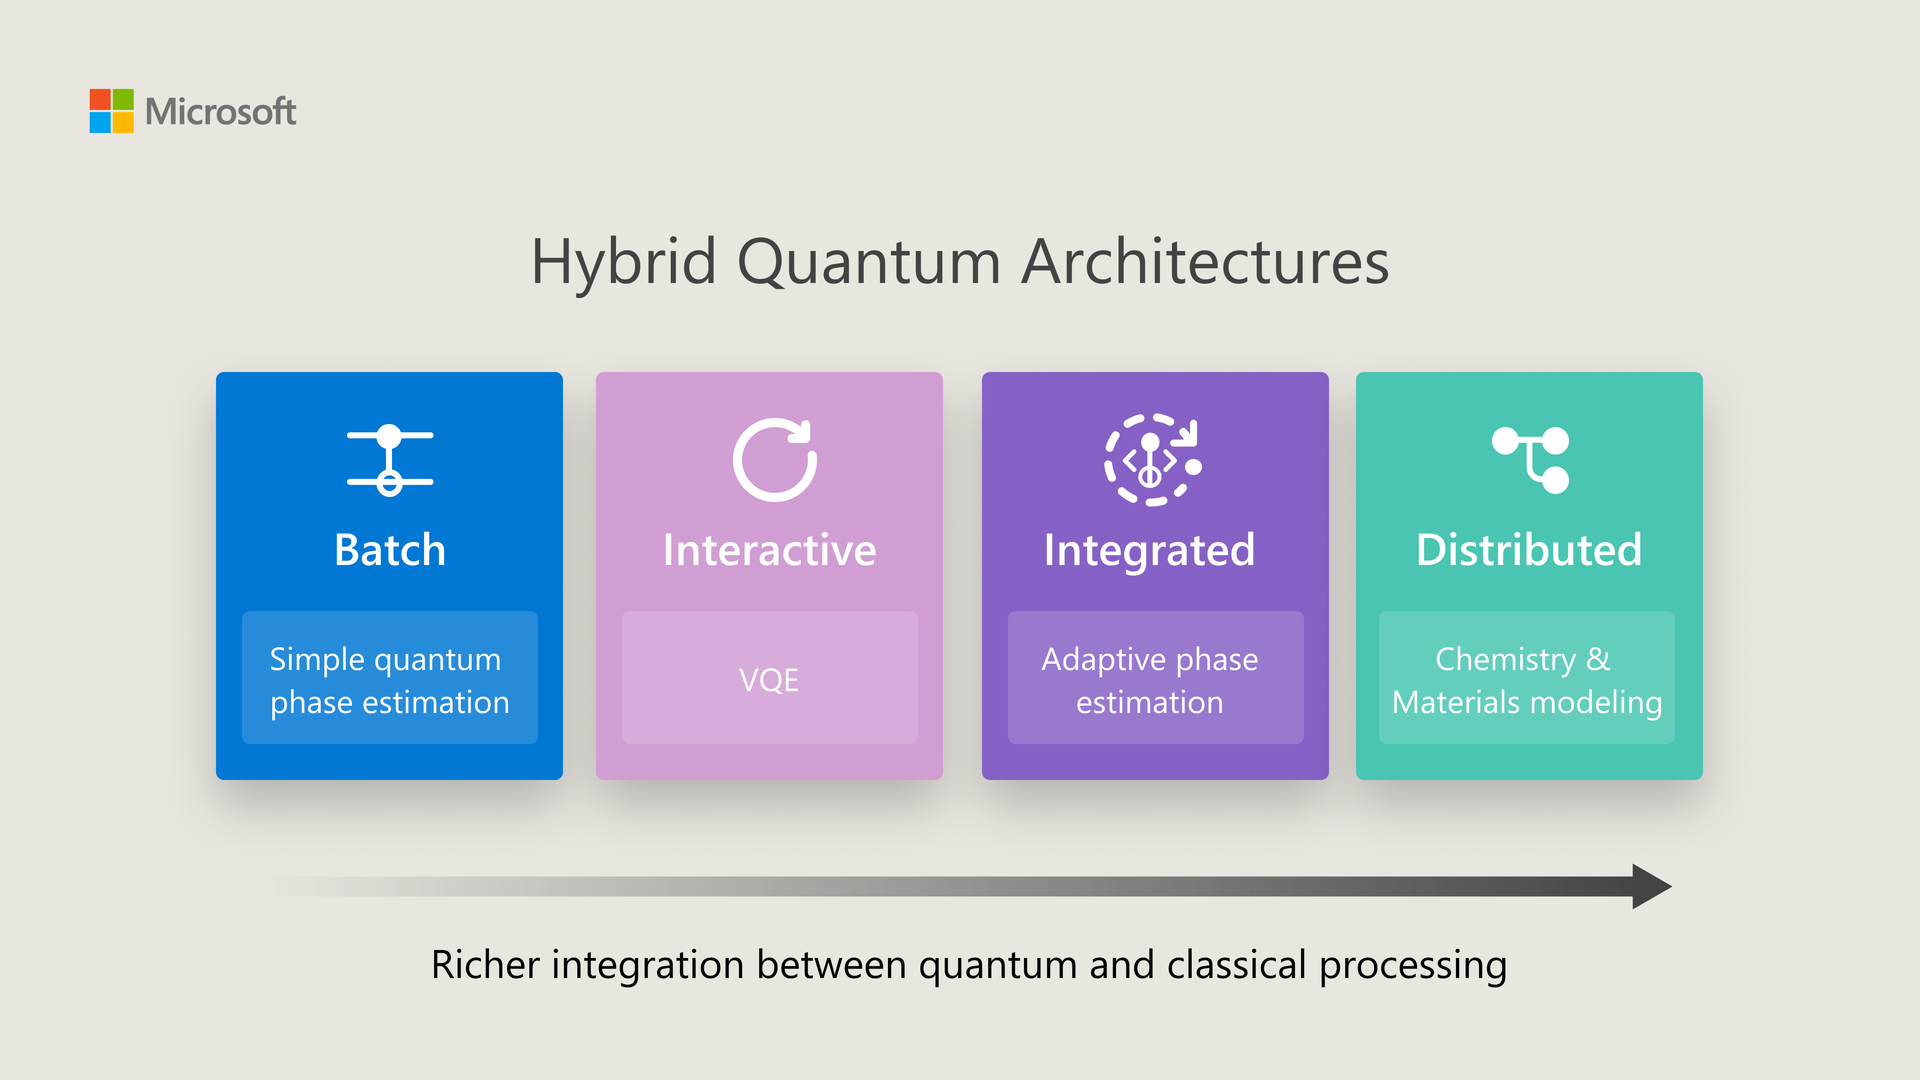 Azure Quantum unlocks the next generation of Hybrid Quantum Computing